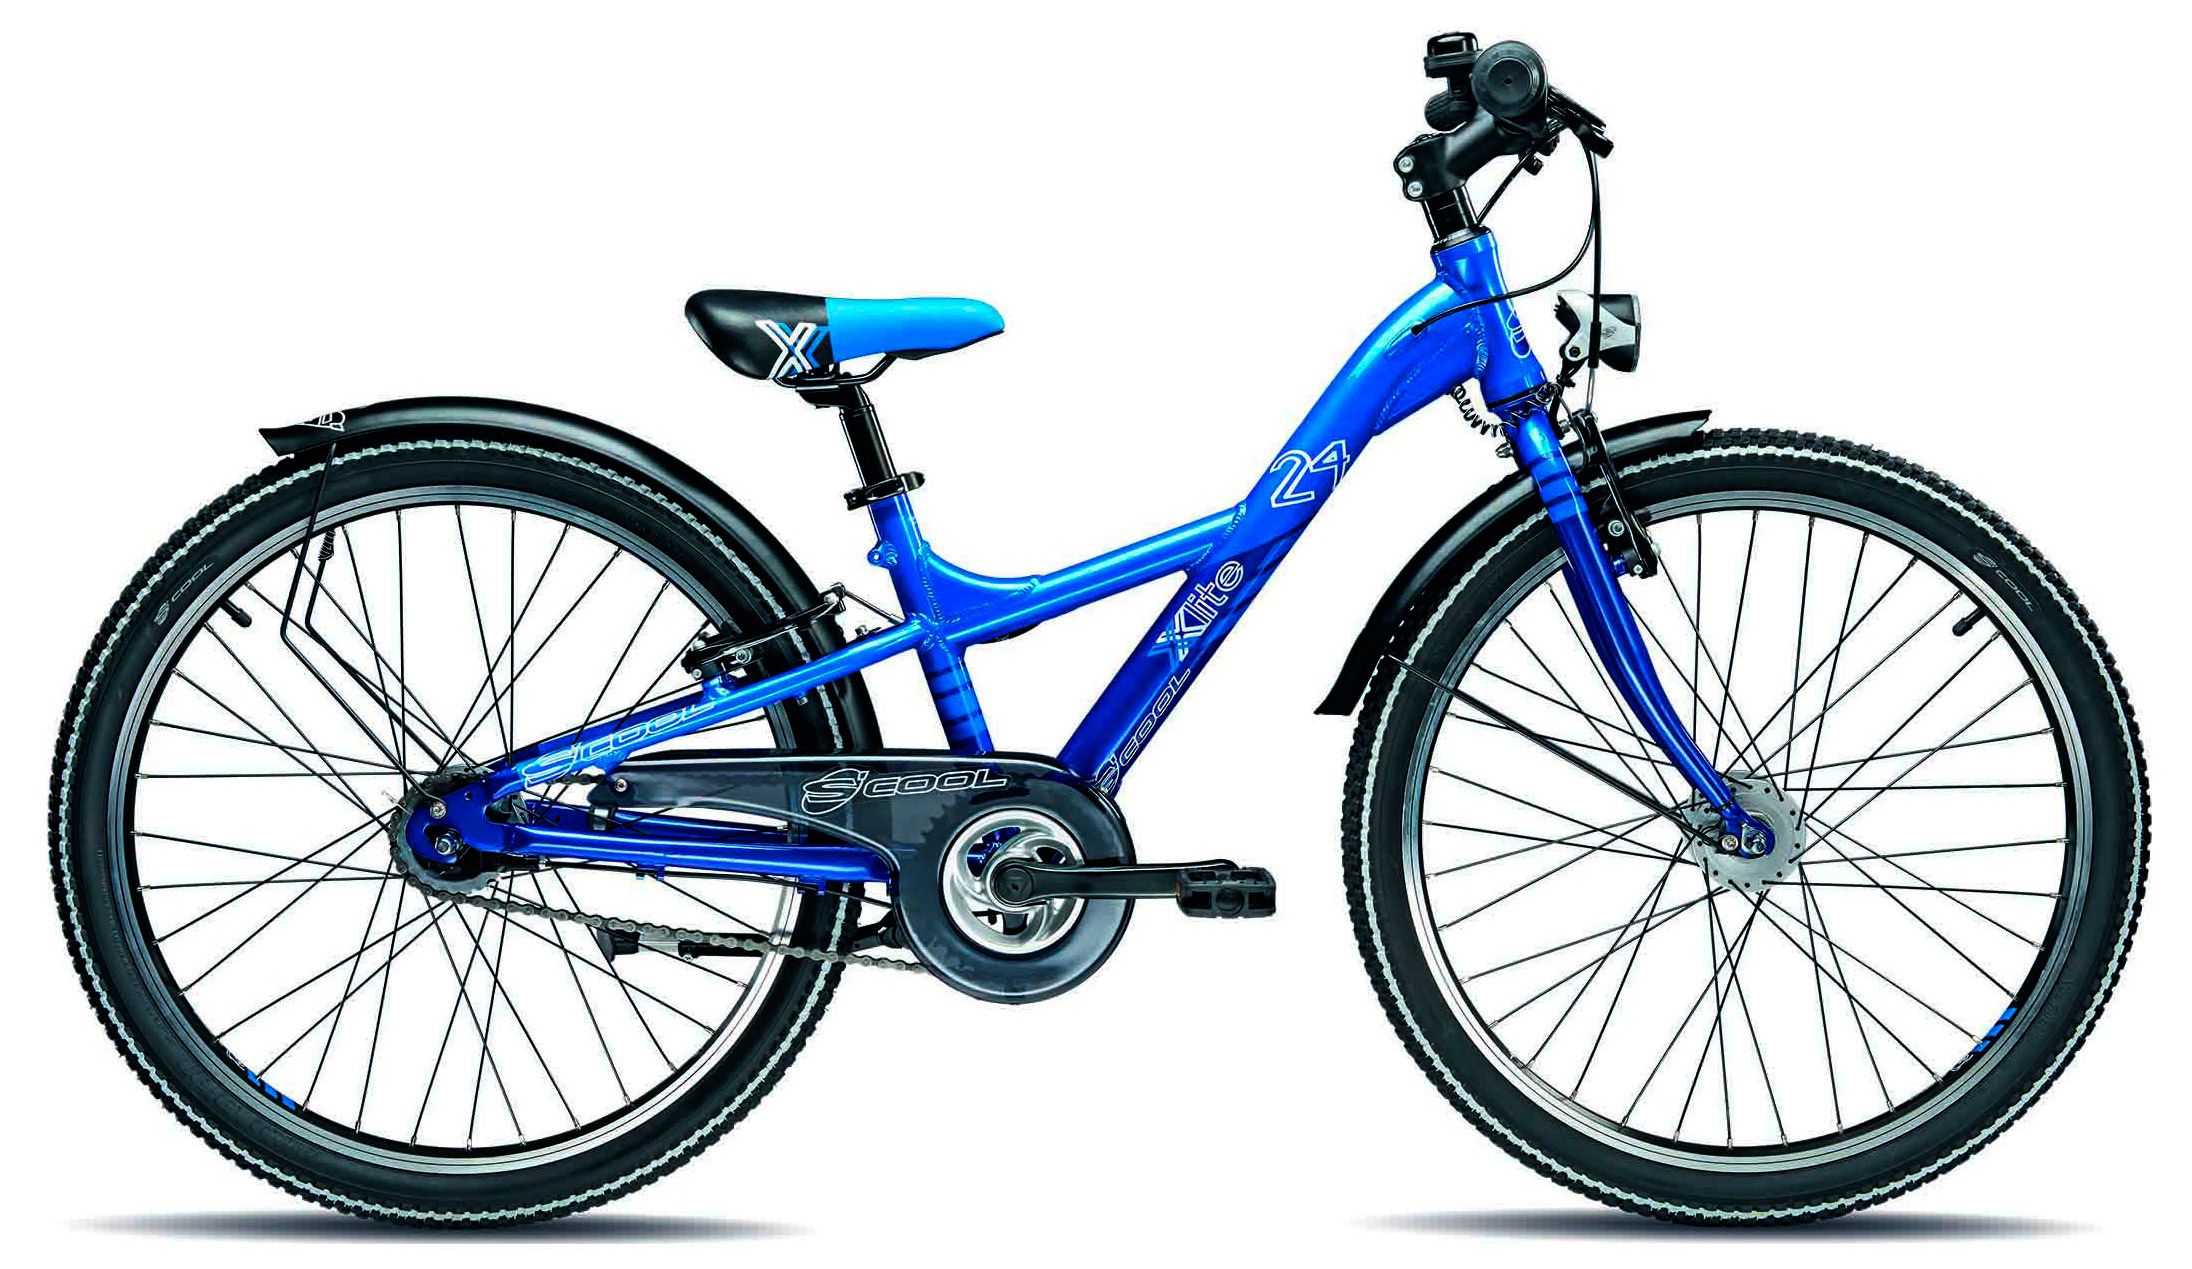  Отзывы о Детском велосипеде Scool XXlite pro 24-7 2015